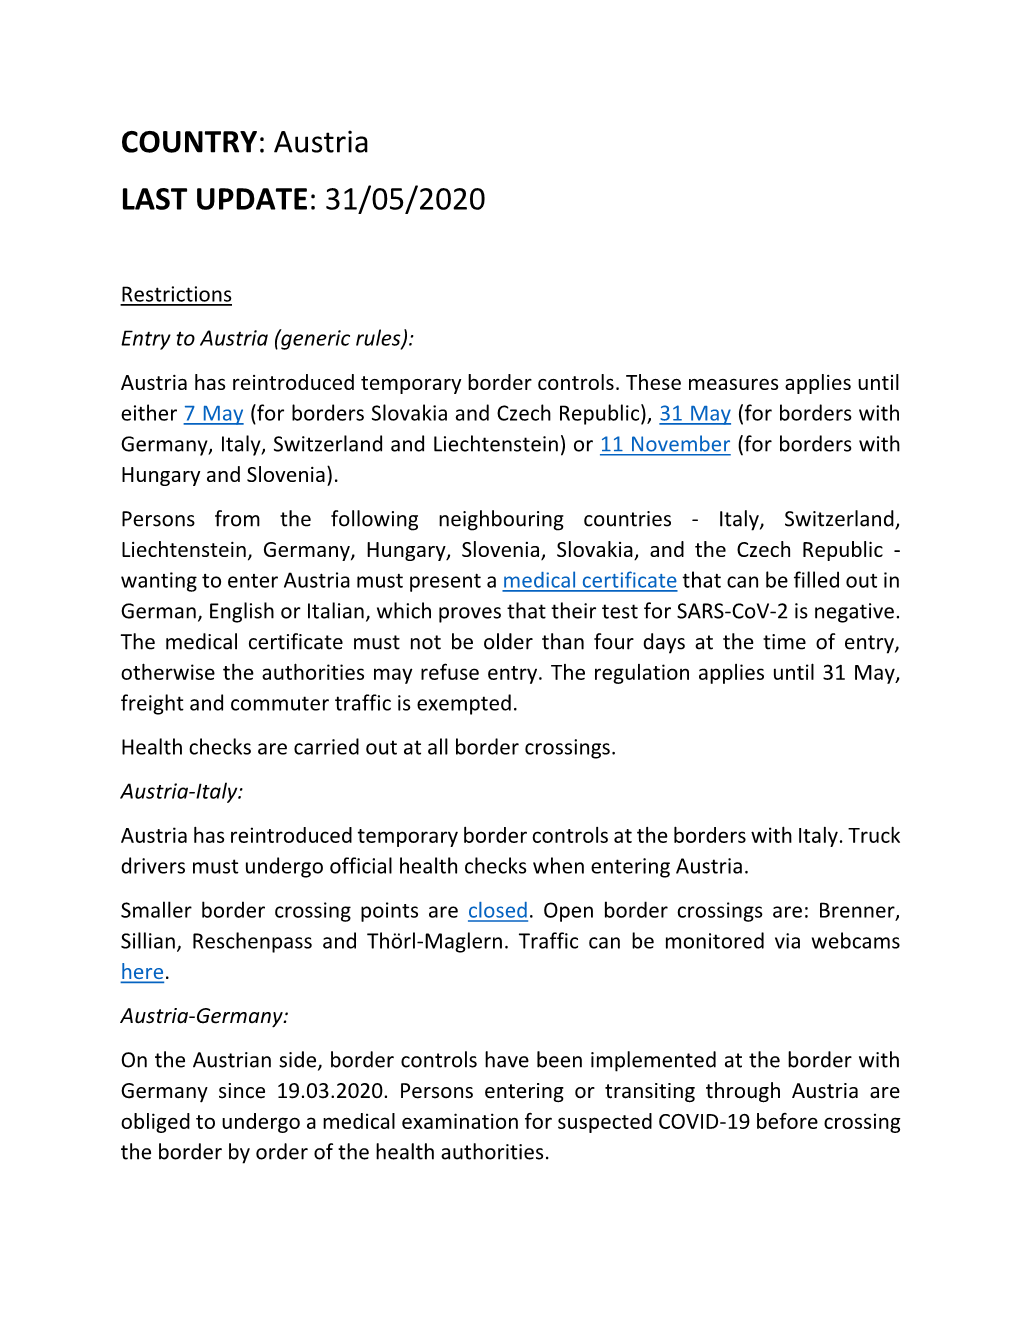 Austria LAST UPDATE: 31/05/2020